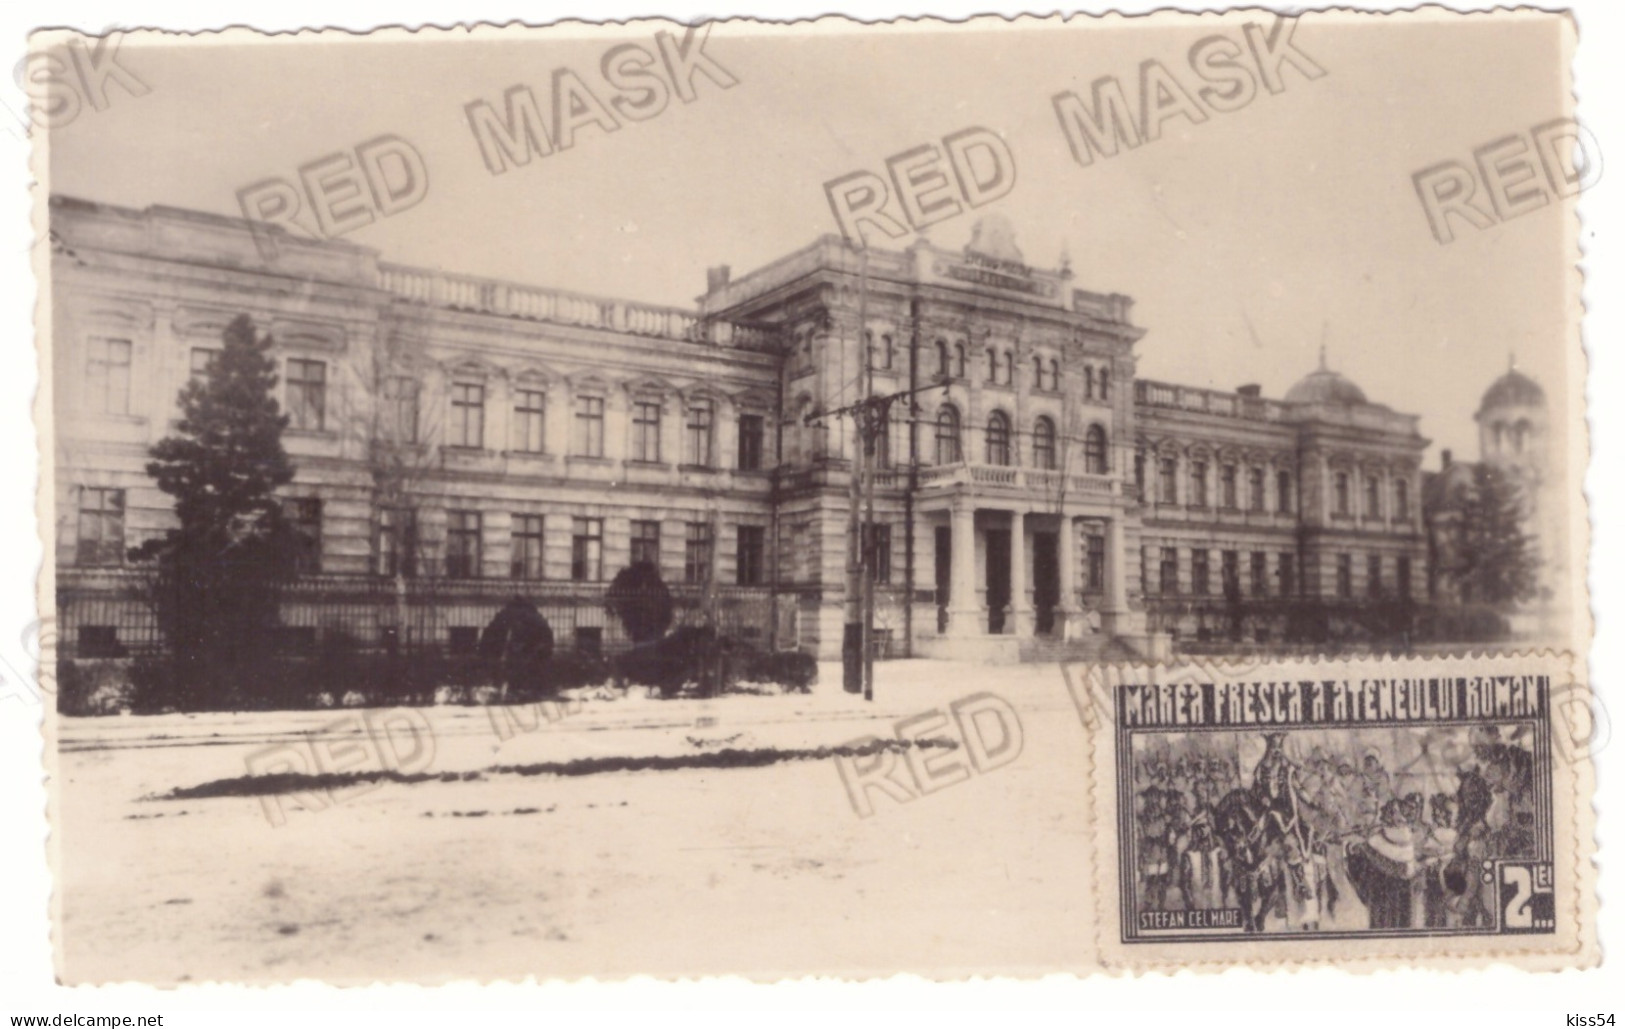 MOL 8 - 21607 CHISINAU, Military School, Moldova - Old Postcard, Real PHOTO - Used - 1936 - Moldova